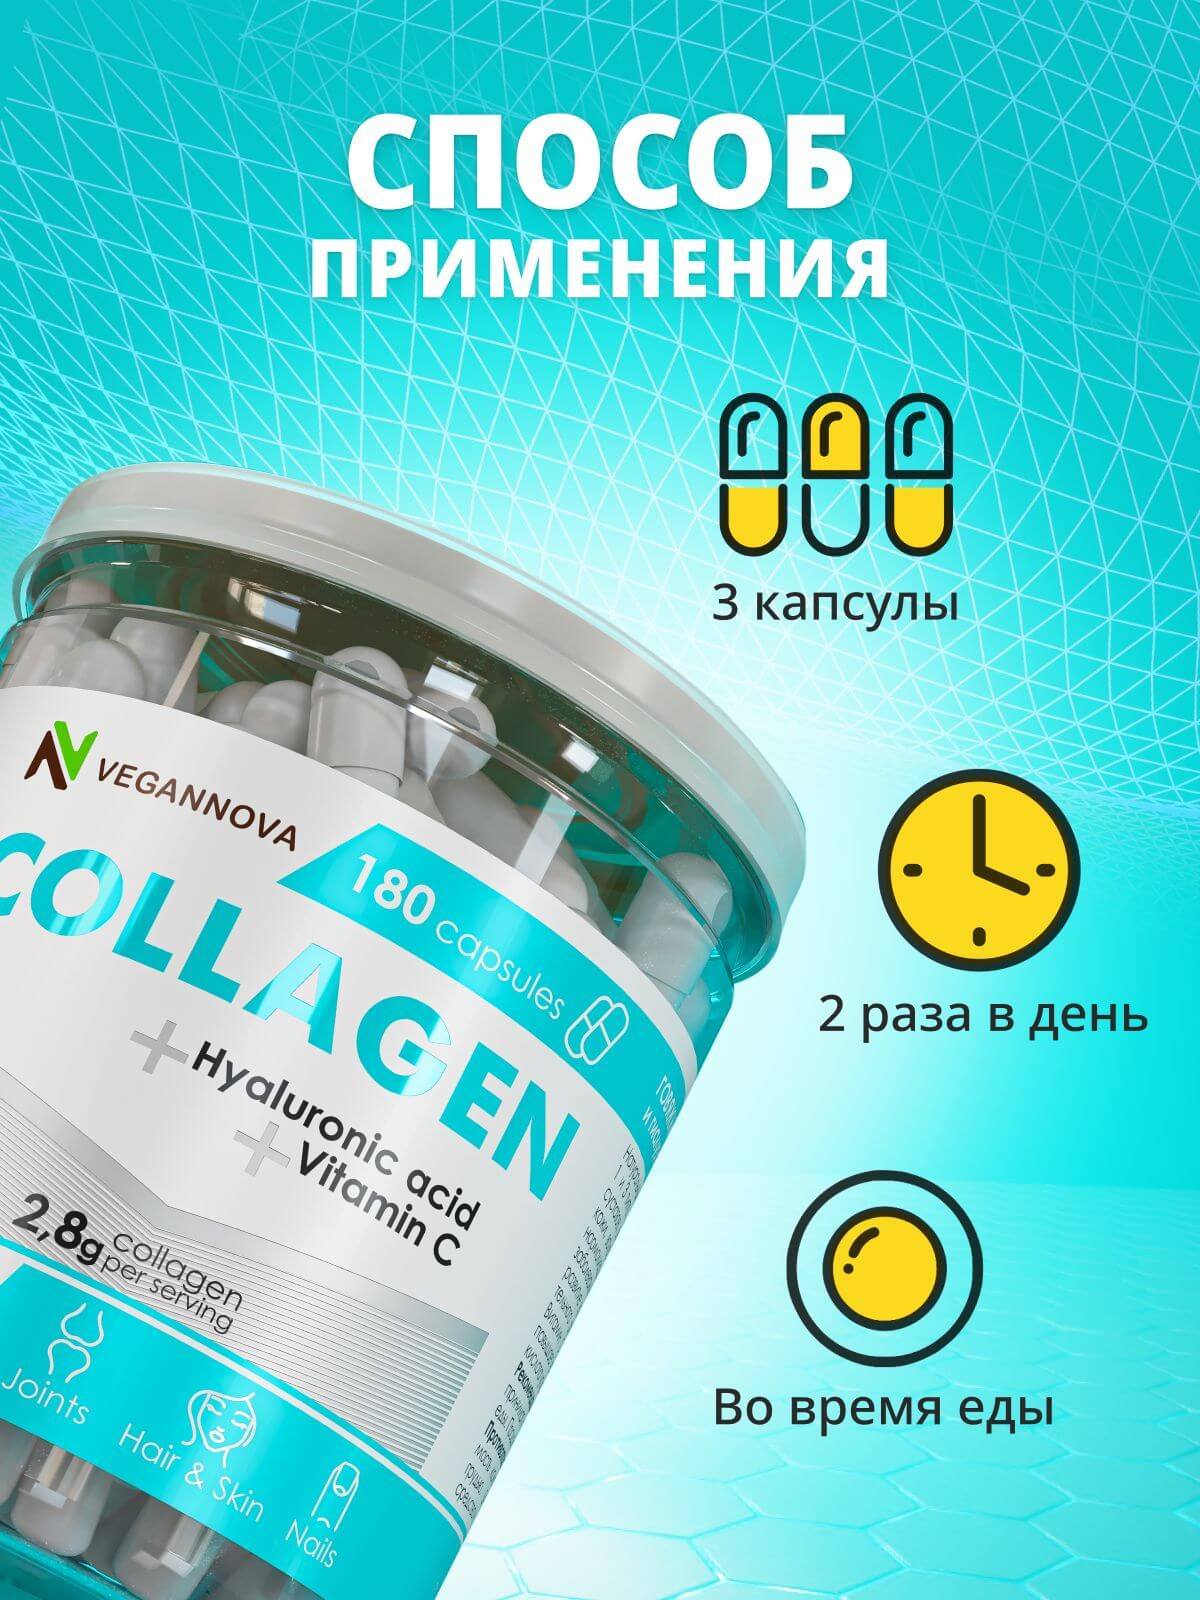 VeganNova Коллаген говяжий 1 и 3 типа с гиалуроновой кислотой и витамином С, для волос, лица, суставов и связок, 180 капсул